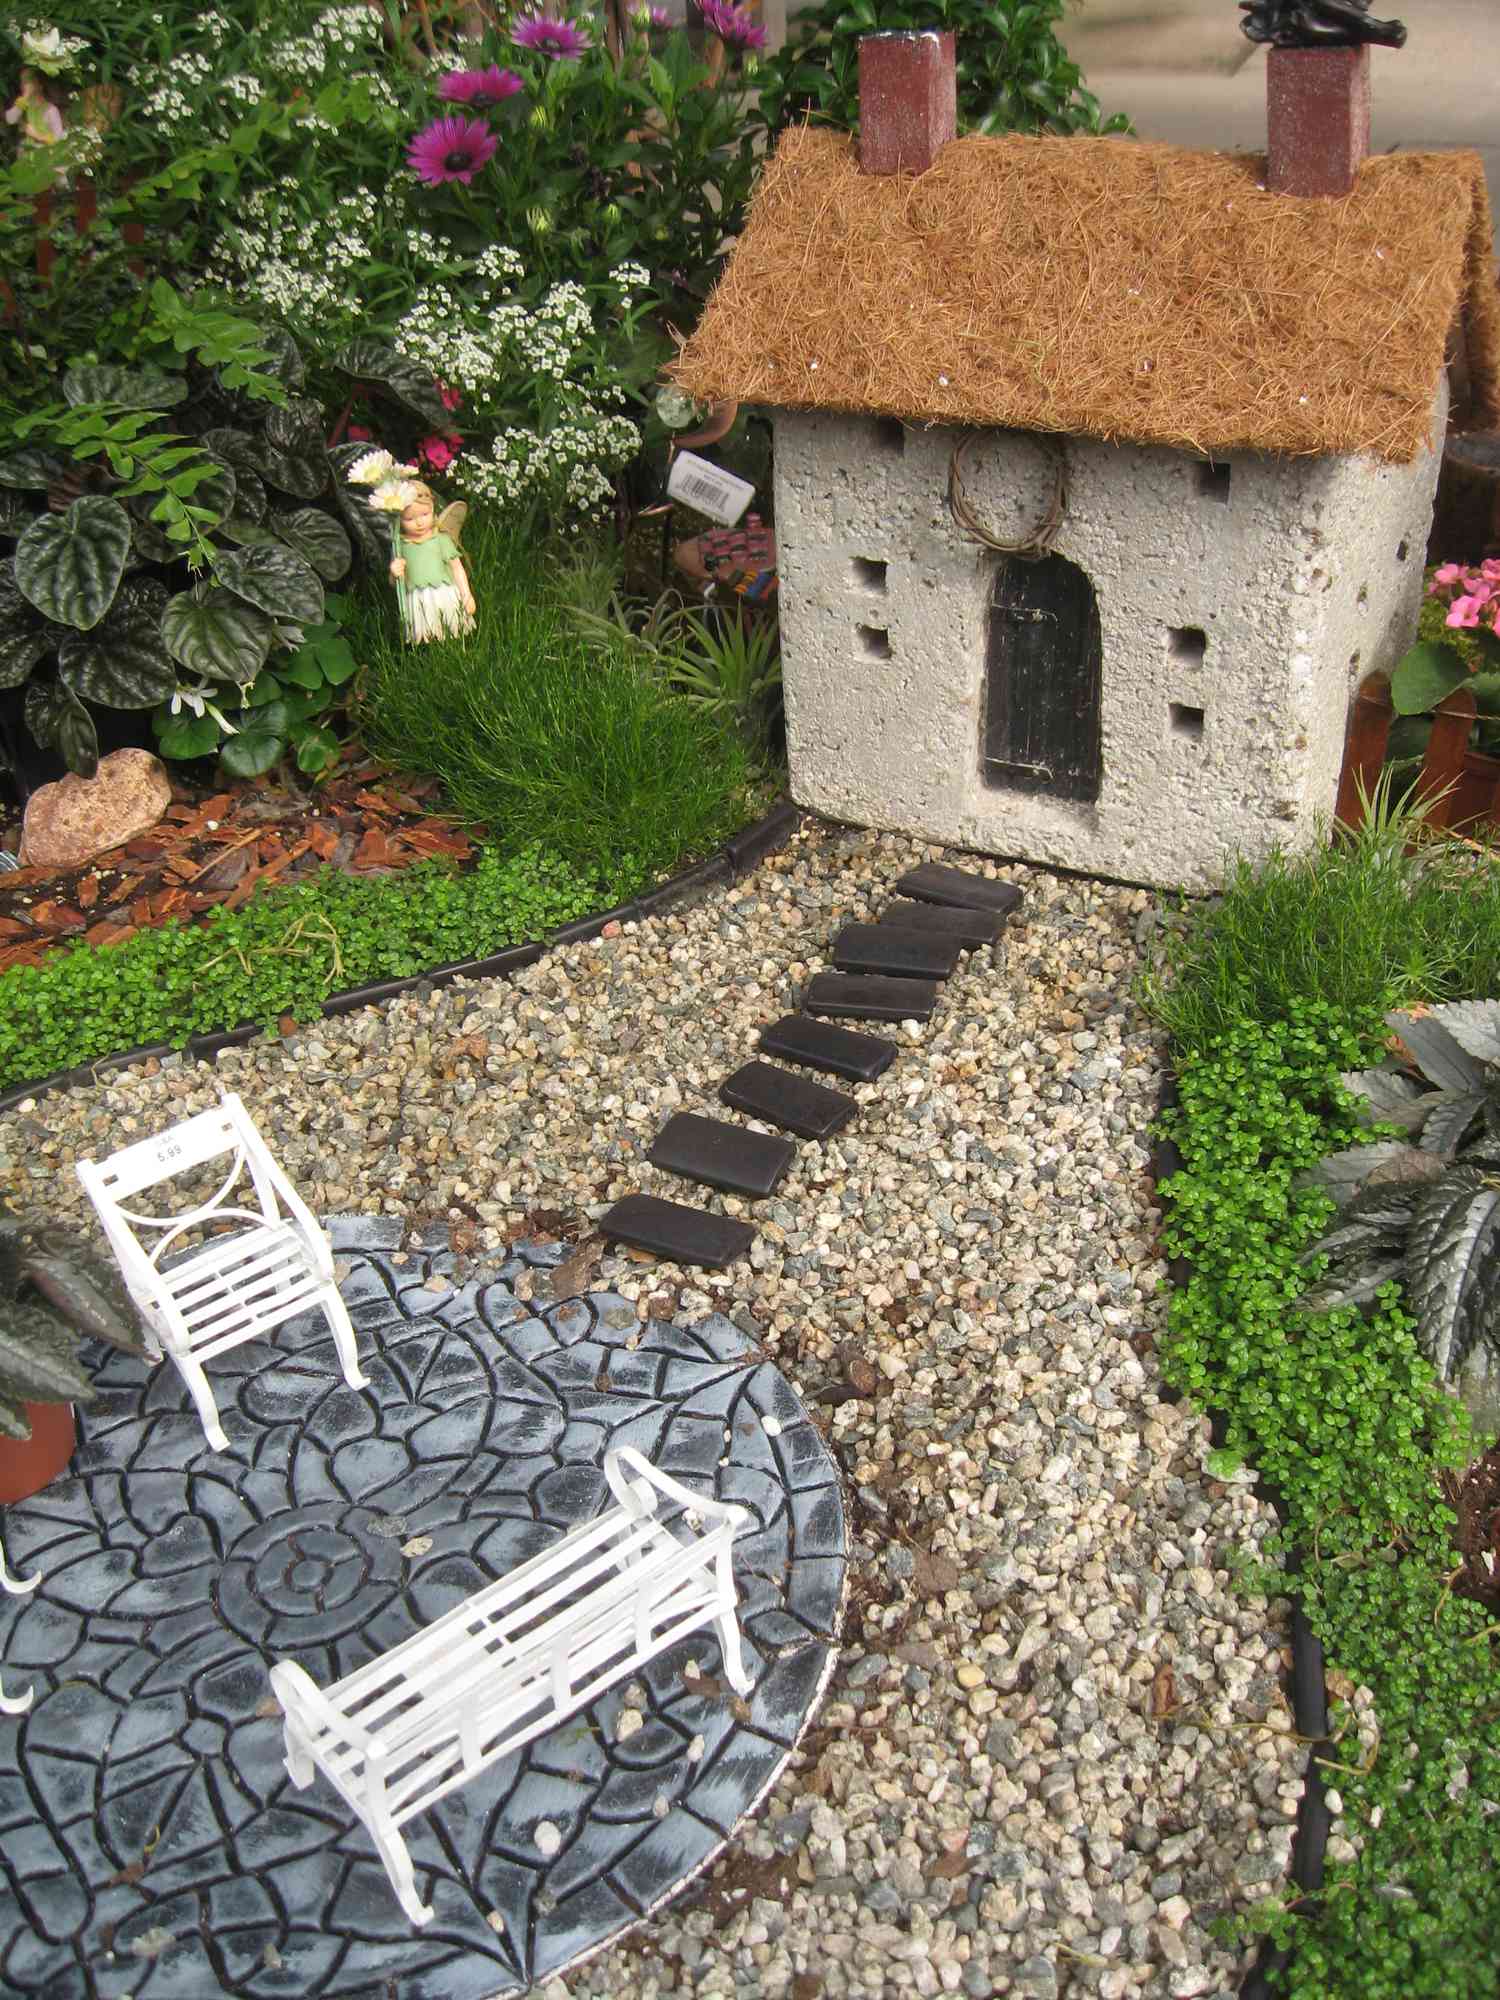 Casa e móveis em miniatura em um jardim de fadas.